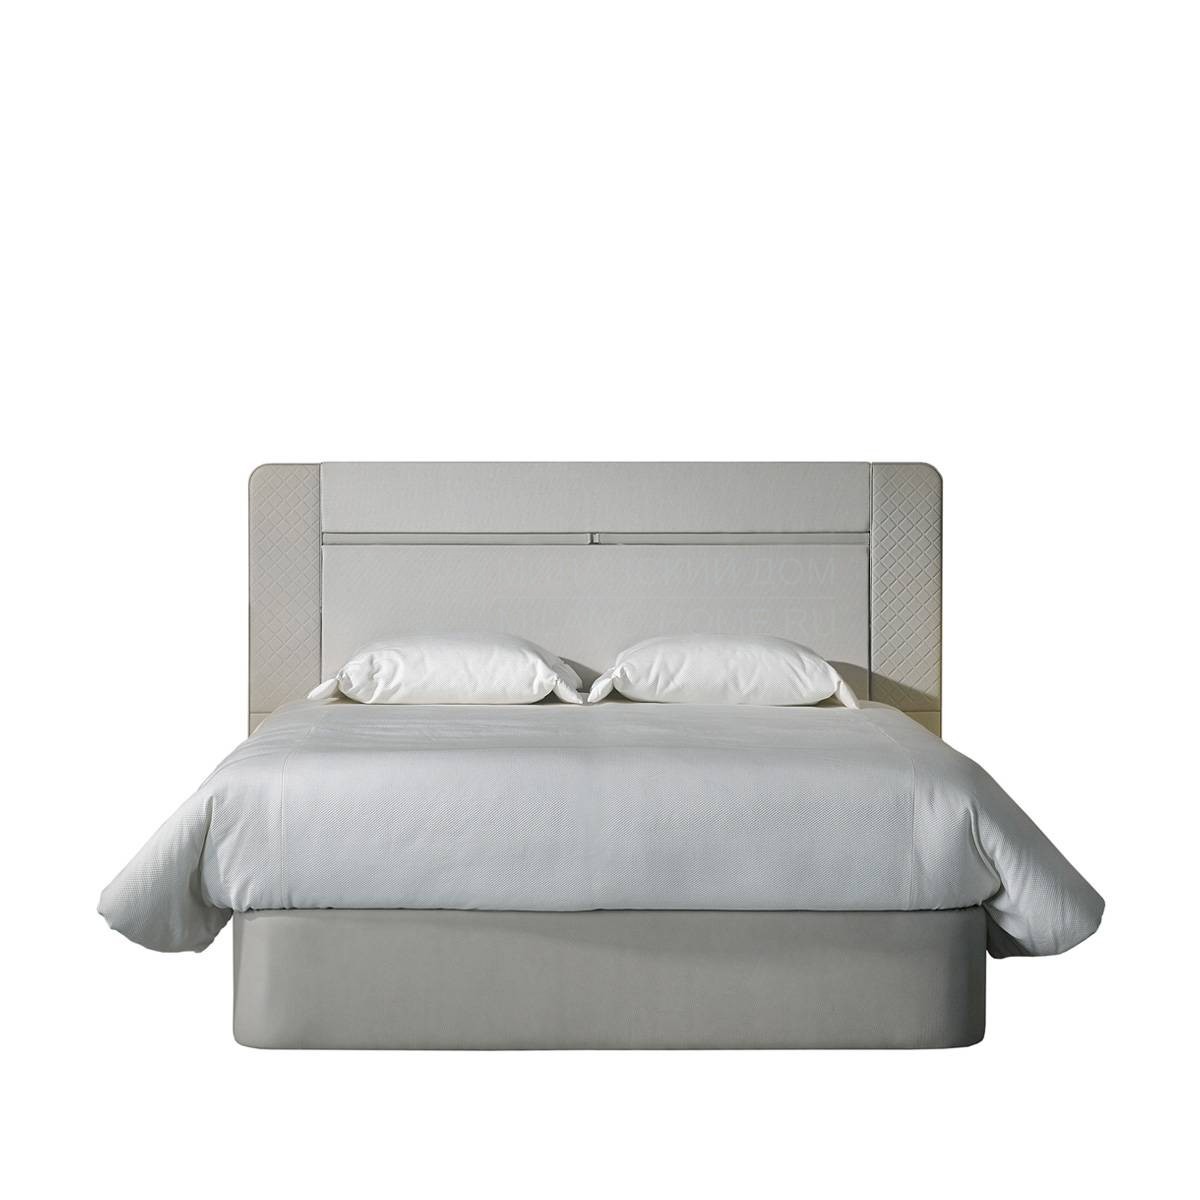 Двуспальная кровать Master / A3125-A3130 из Испании фабрики COLECCION ALEXANDRA